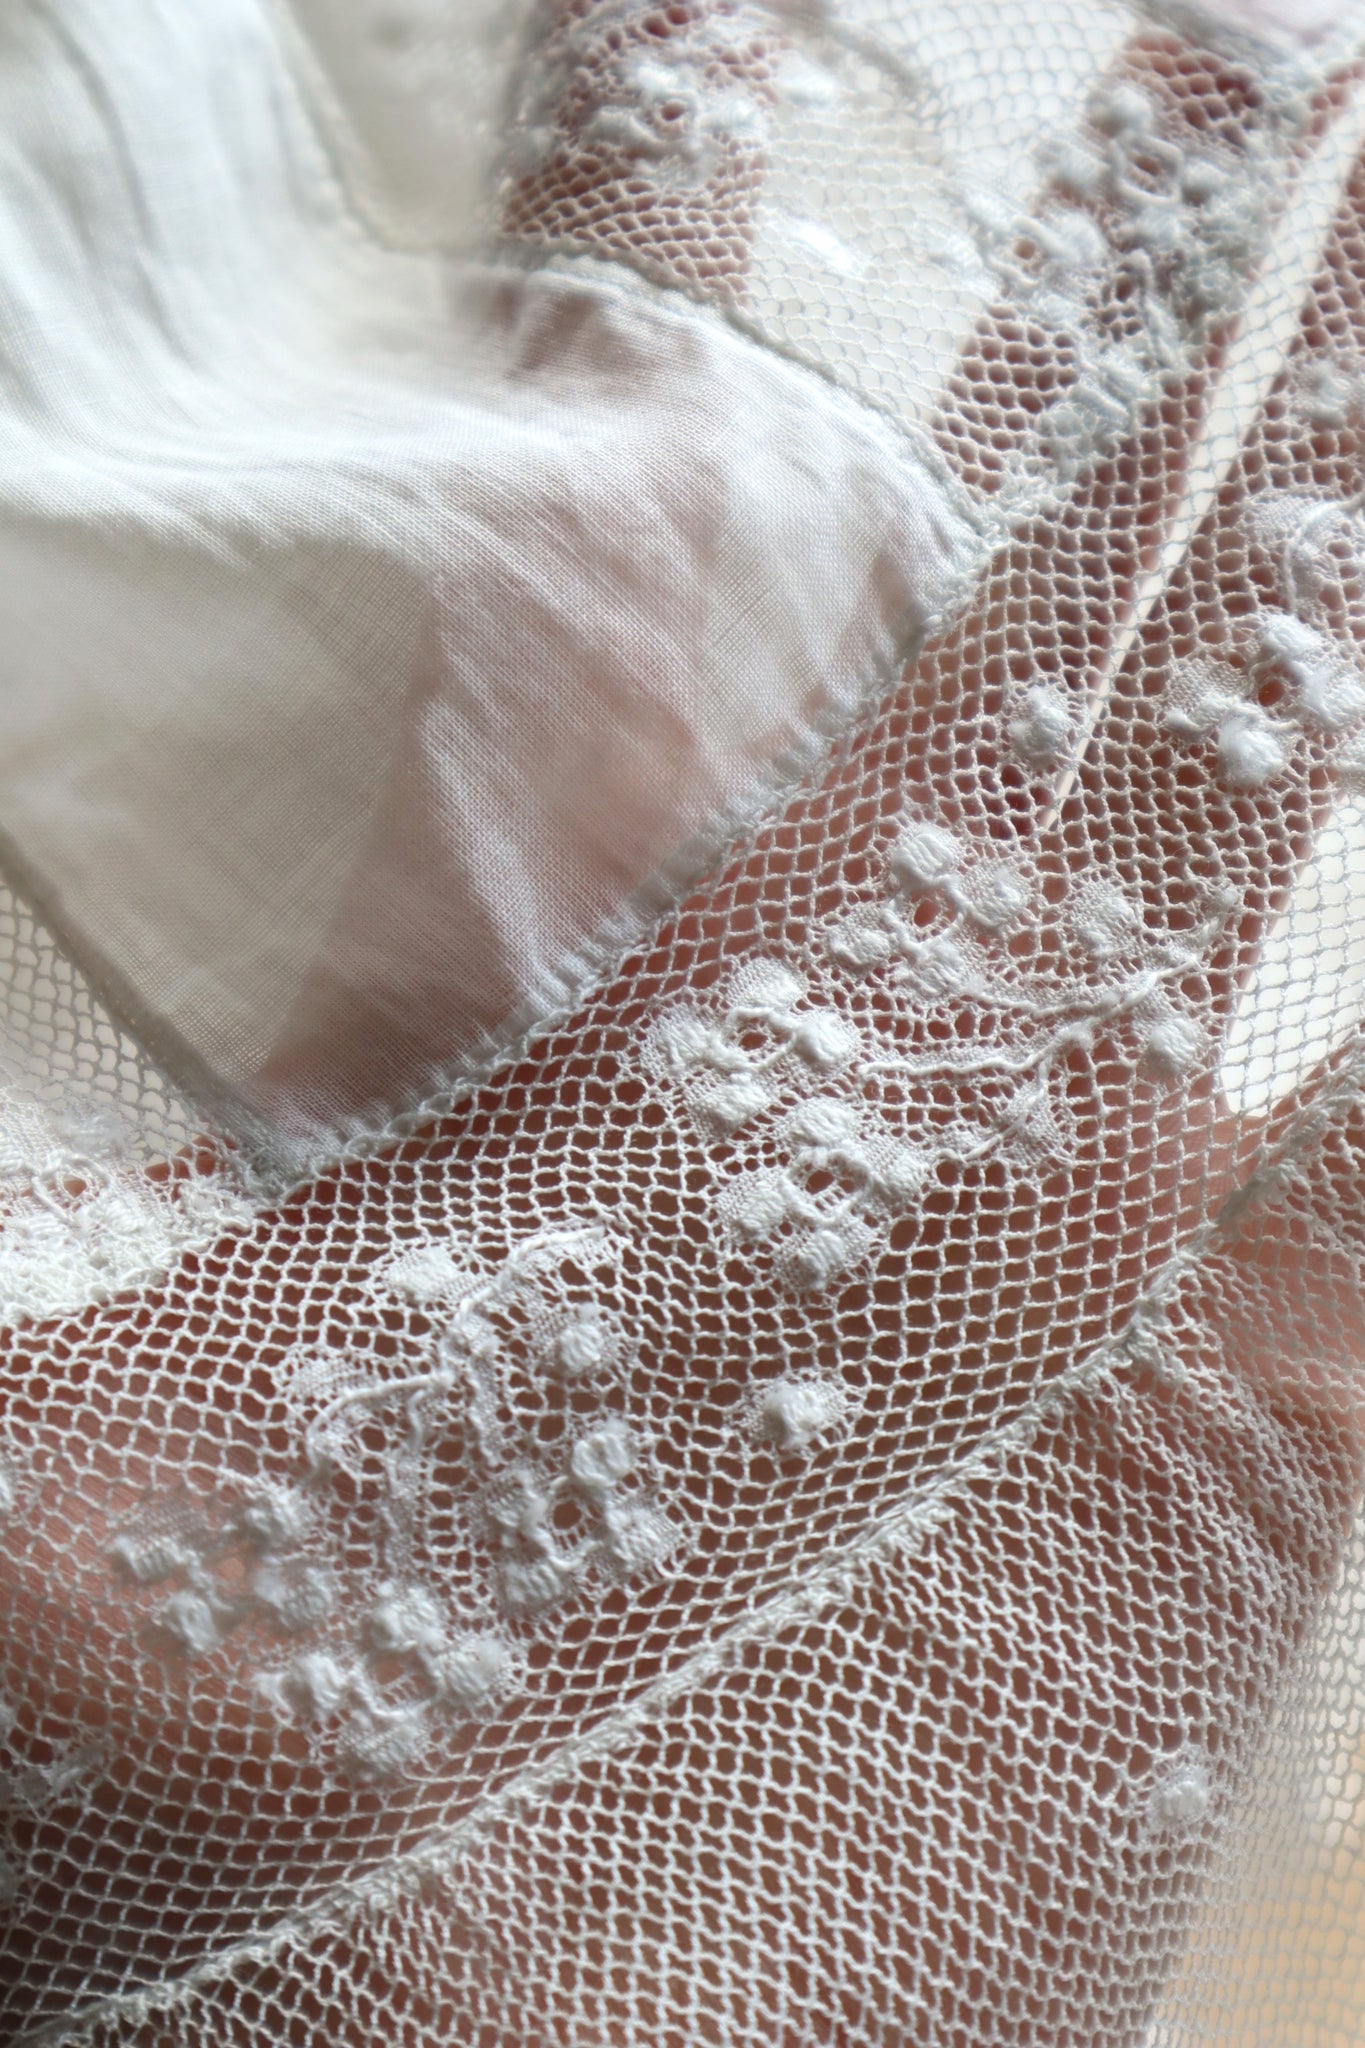 19th Victorian 4Tier Lace Ruffles Cotton Petticoat